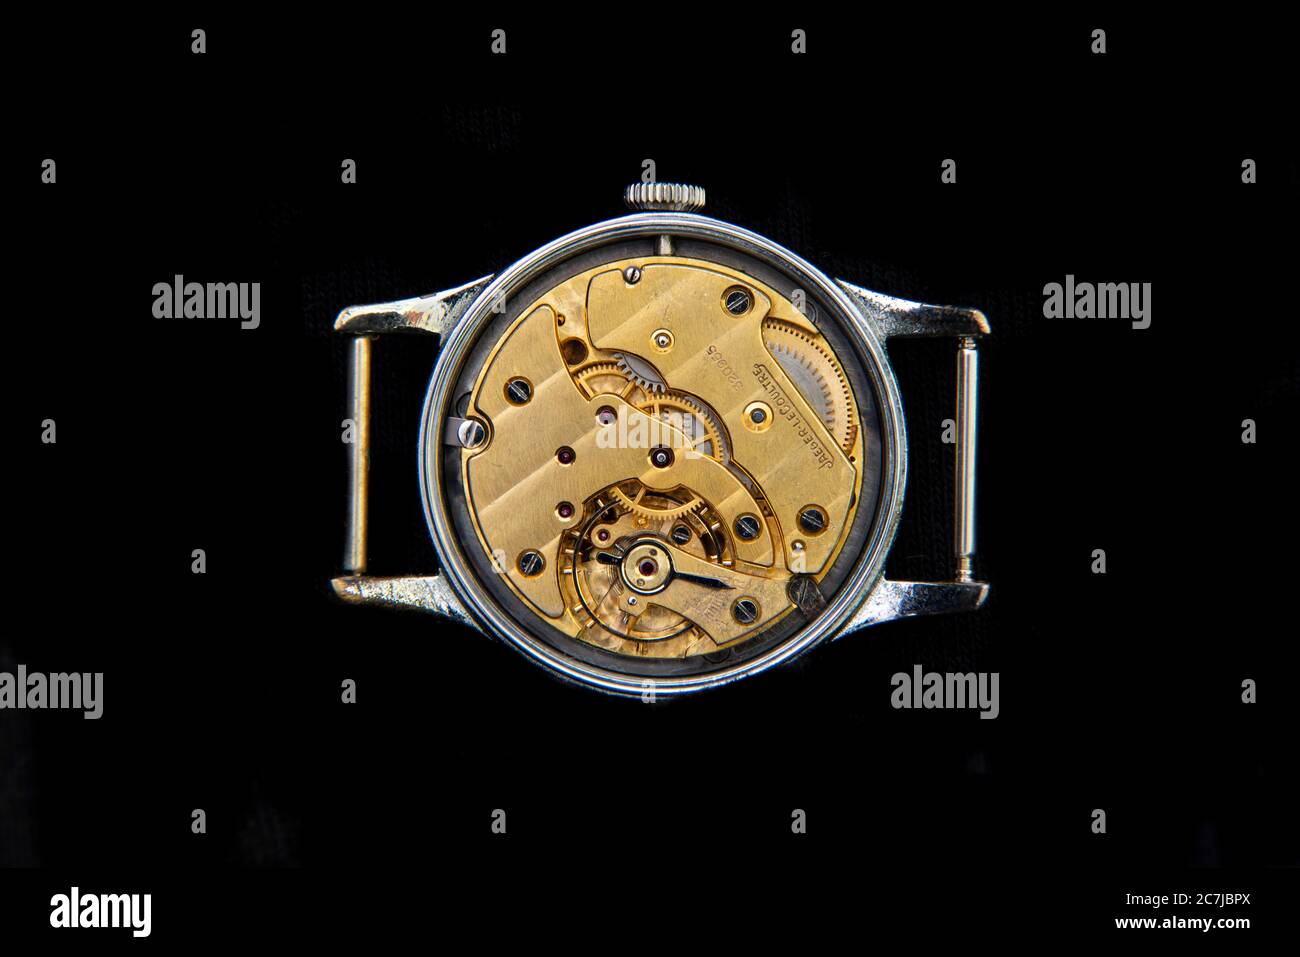 Vintage Jaeger LeCoultre mouvement mécanique de montre-bracelet sur fond noir Banque D'Images